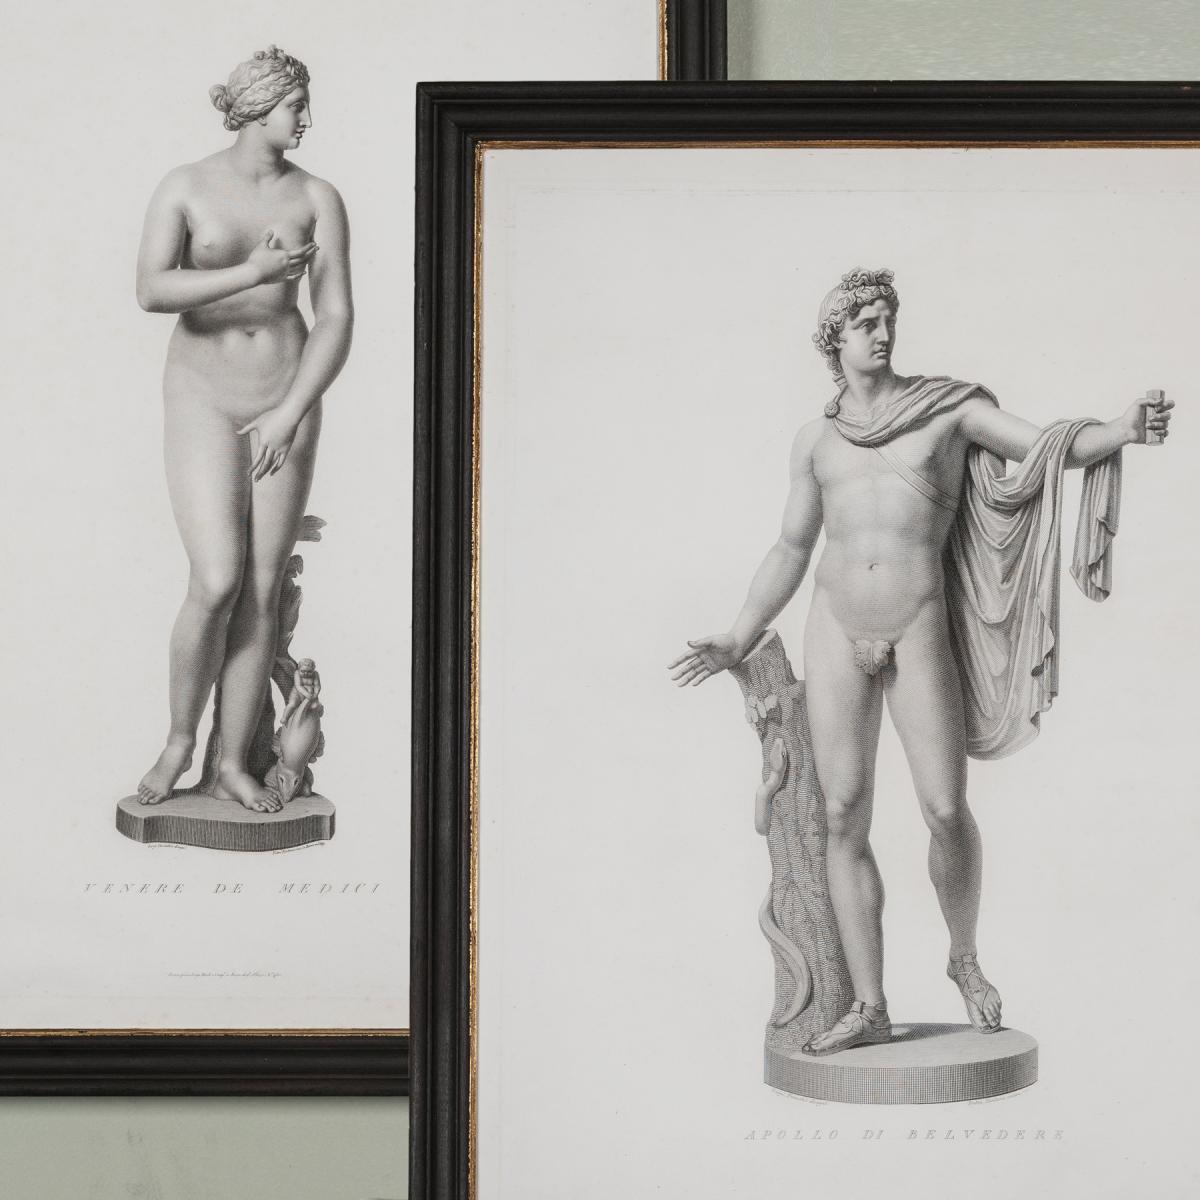 Belvedere Apollo and Medici Venus